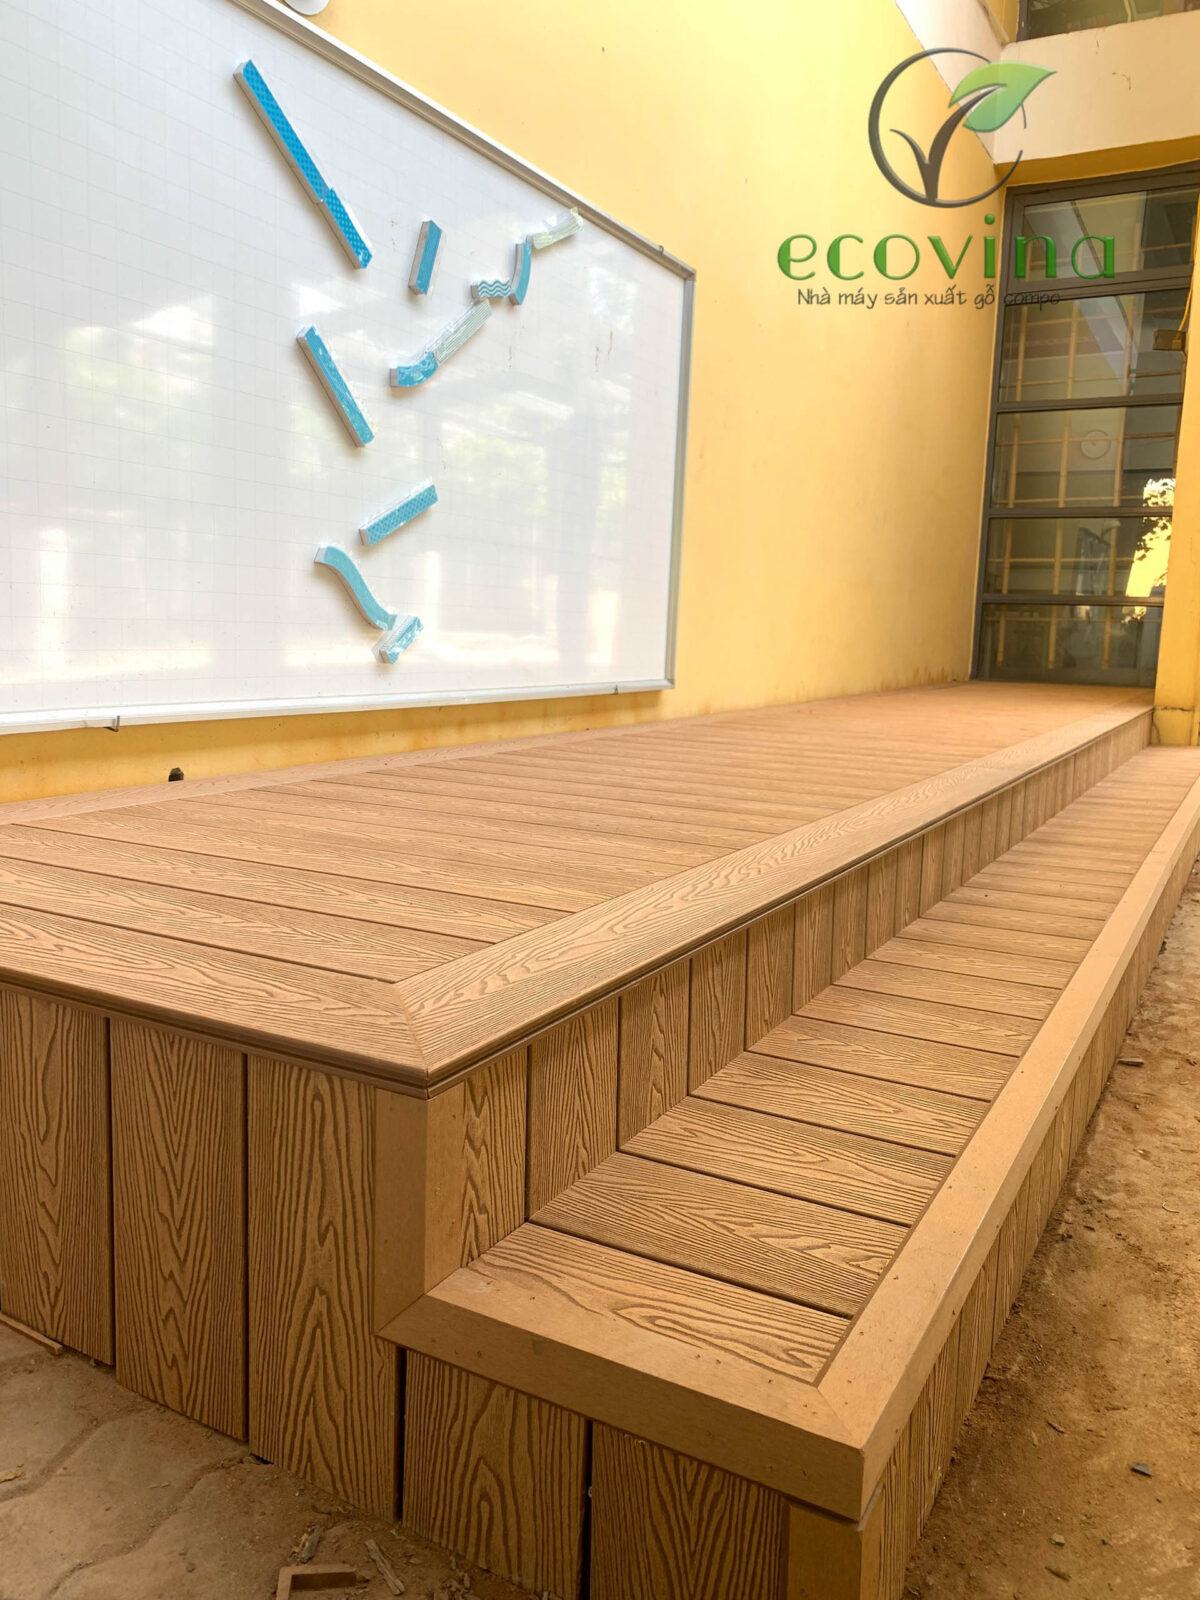 Ecovina thi công thiết kế sàn gỗ nhưa ngoài trời 